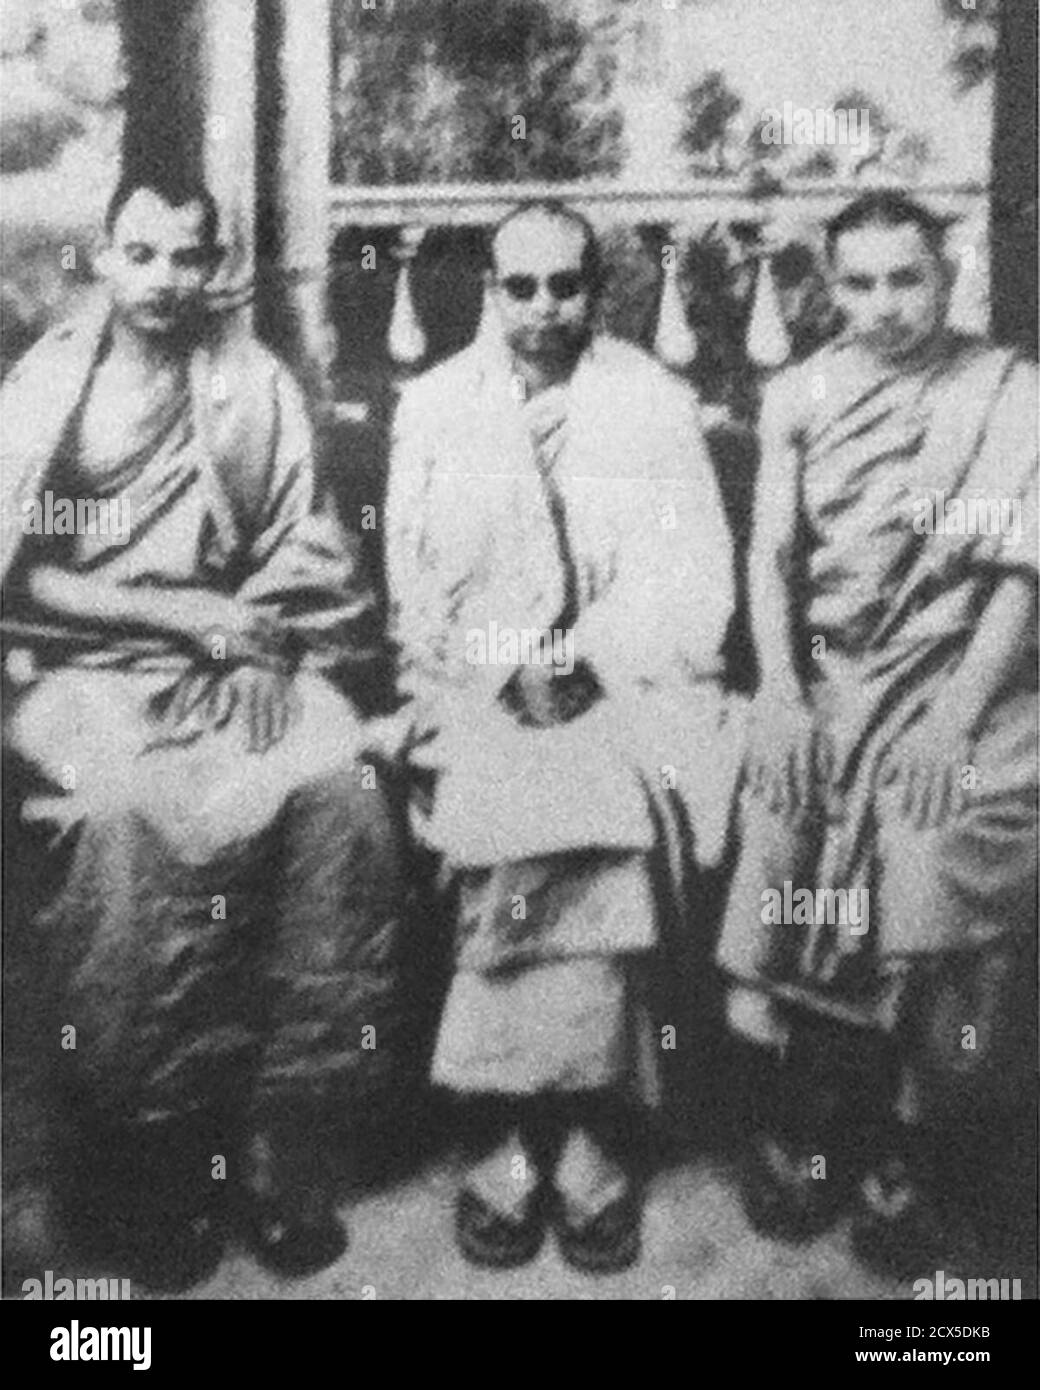 ' Nepalese Buddhist monks Pragyananda, Mahapragya and Shakyananda in Kalimpong, India in circa 1935.' Stock Photo